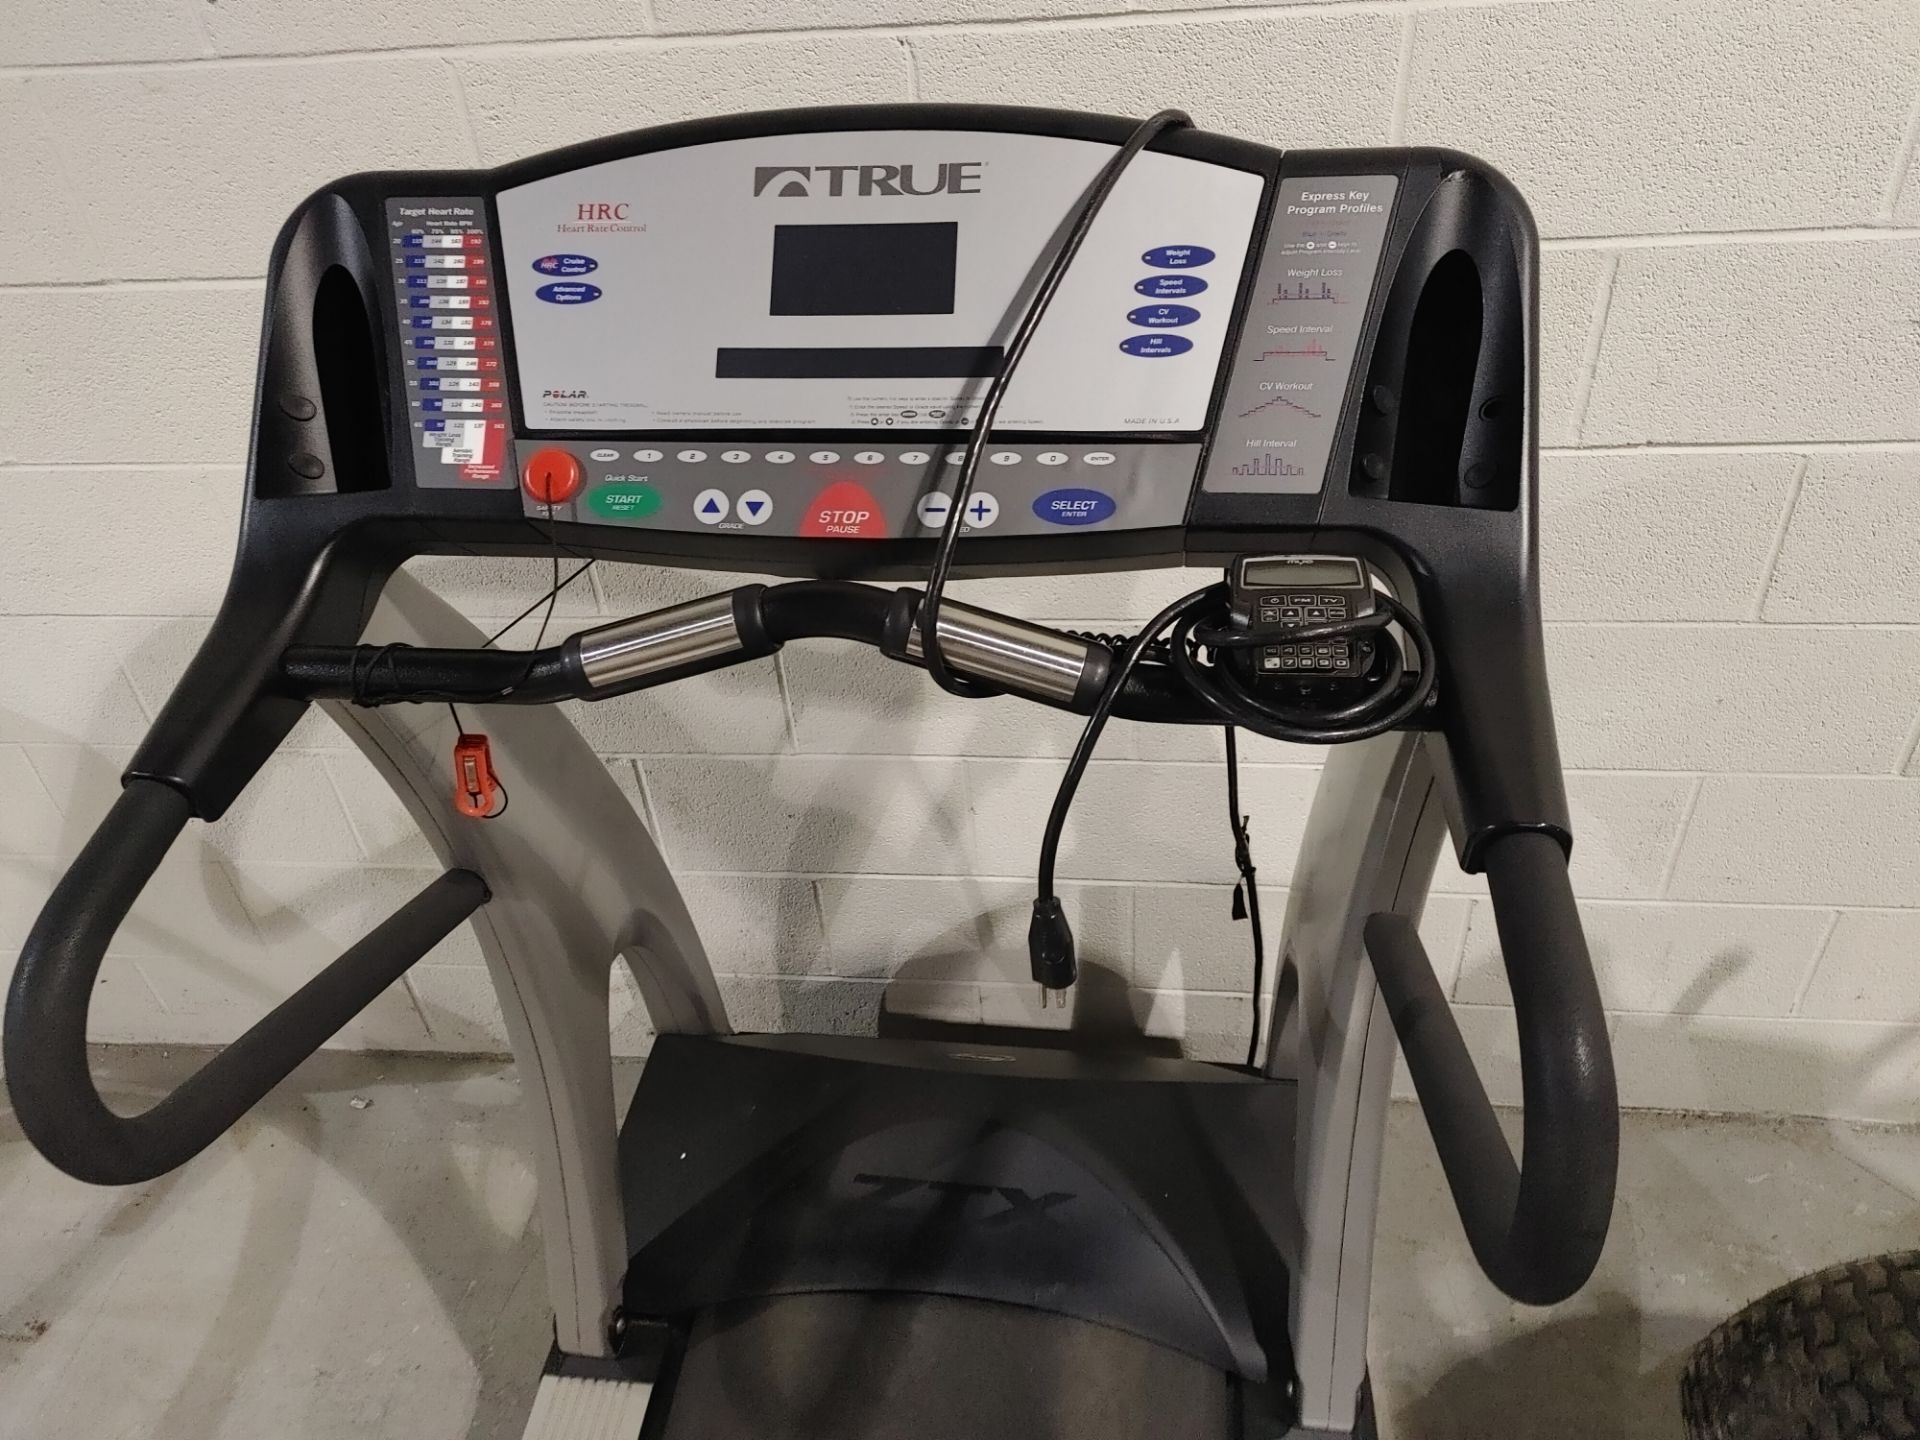 True Fitness Z9.1 Treadmill - Image 3 of 3